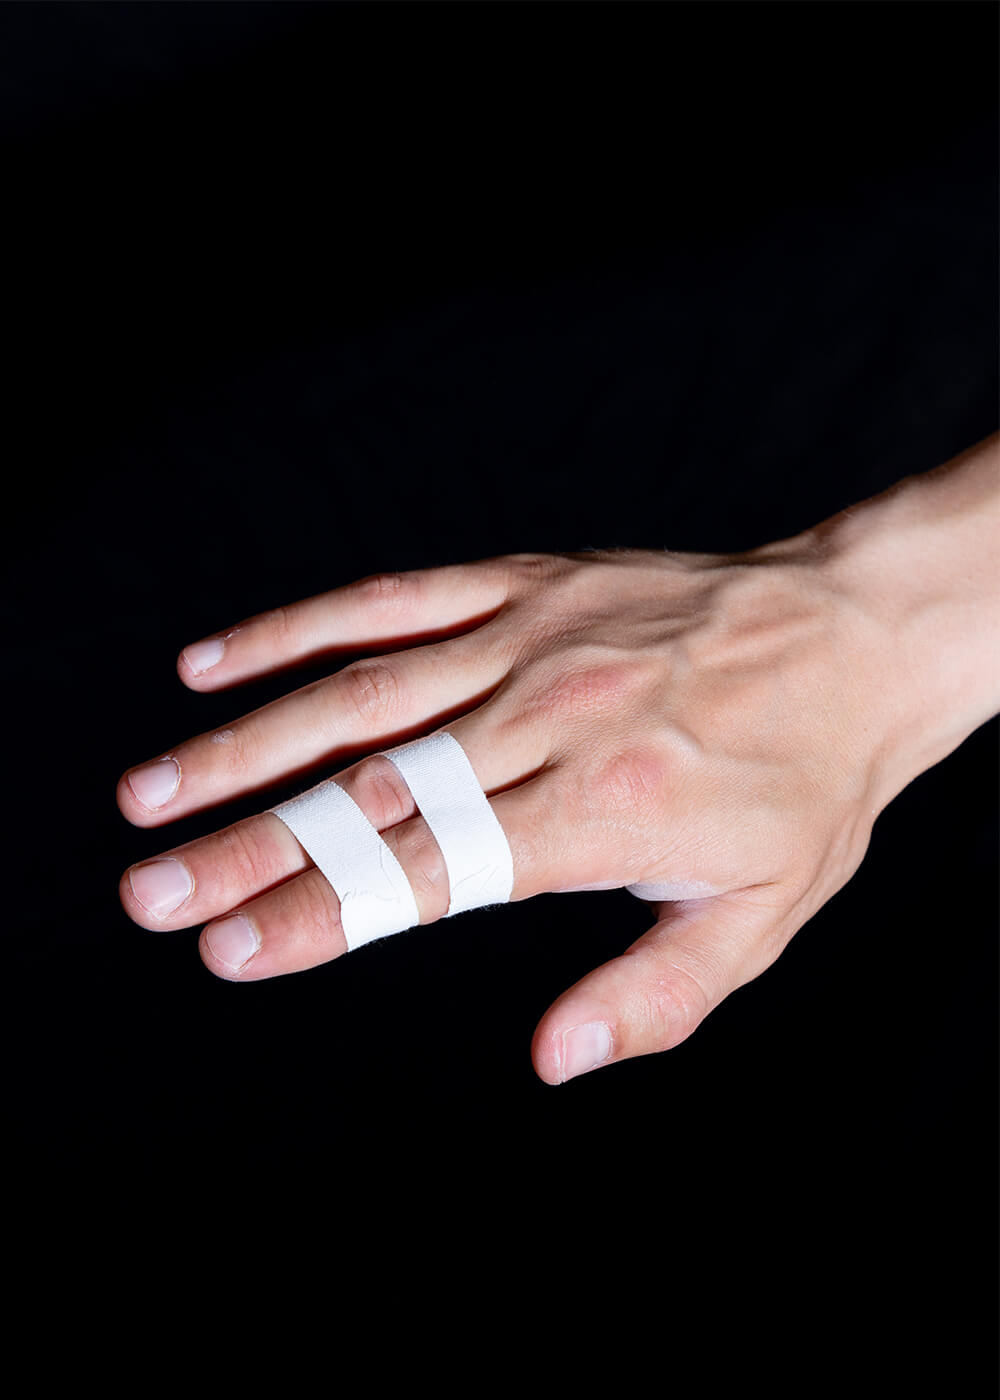 Strap d'haltérophilie de 9m pour les doigts ou les articulation BRANK Tapes